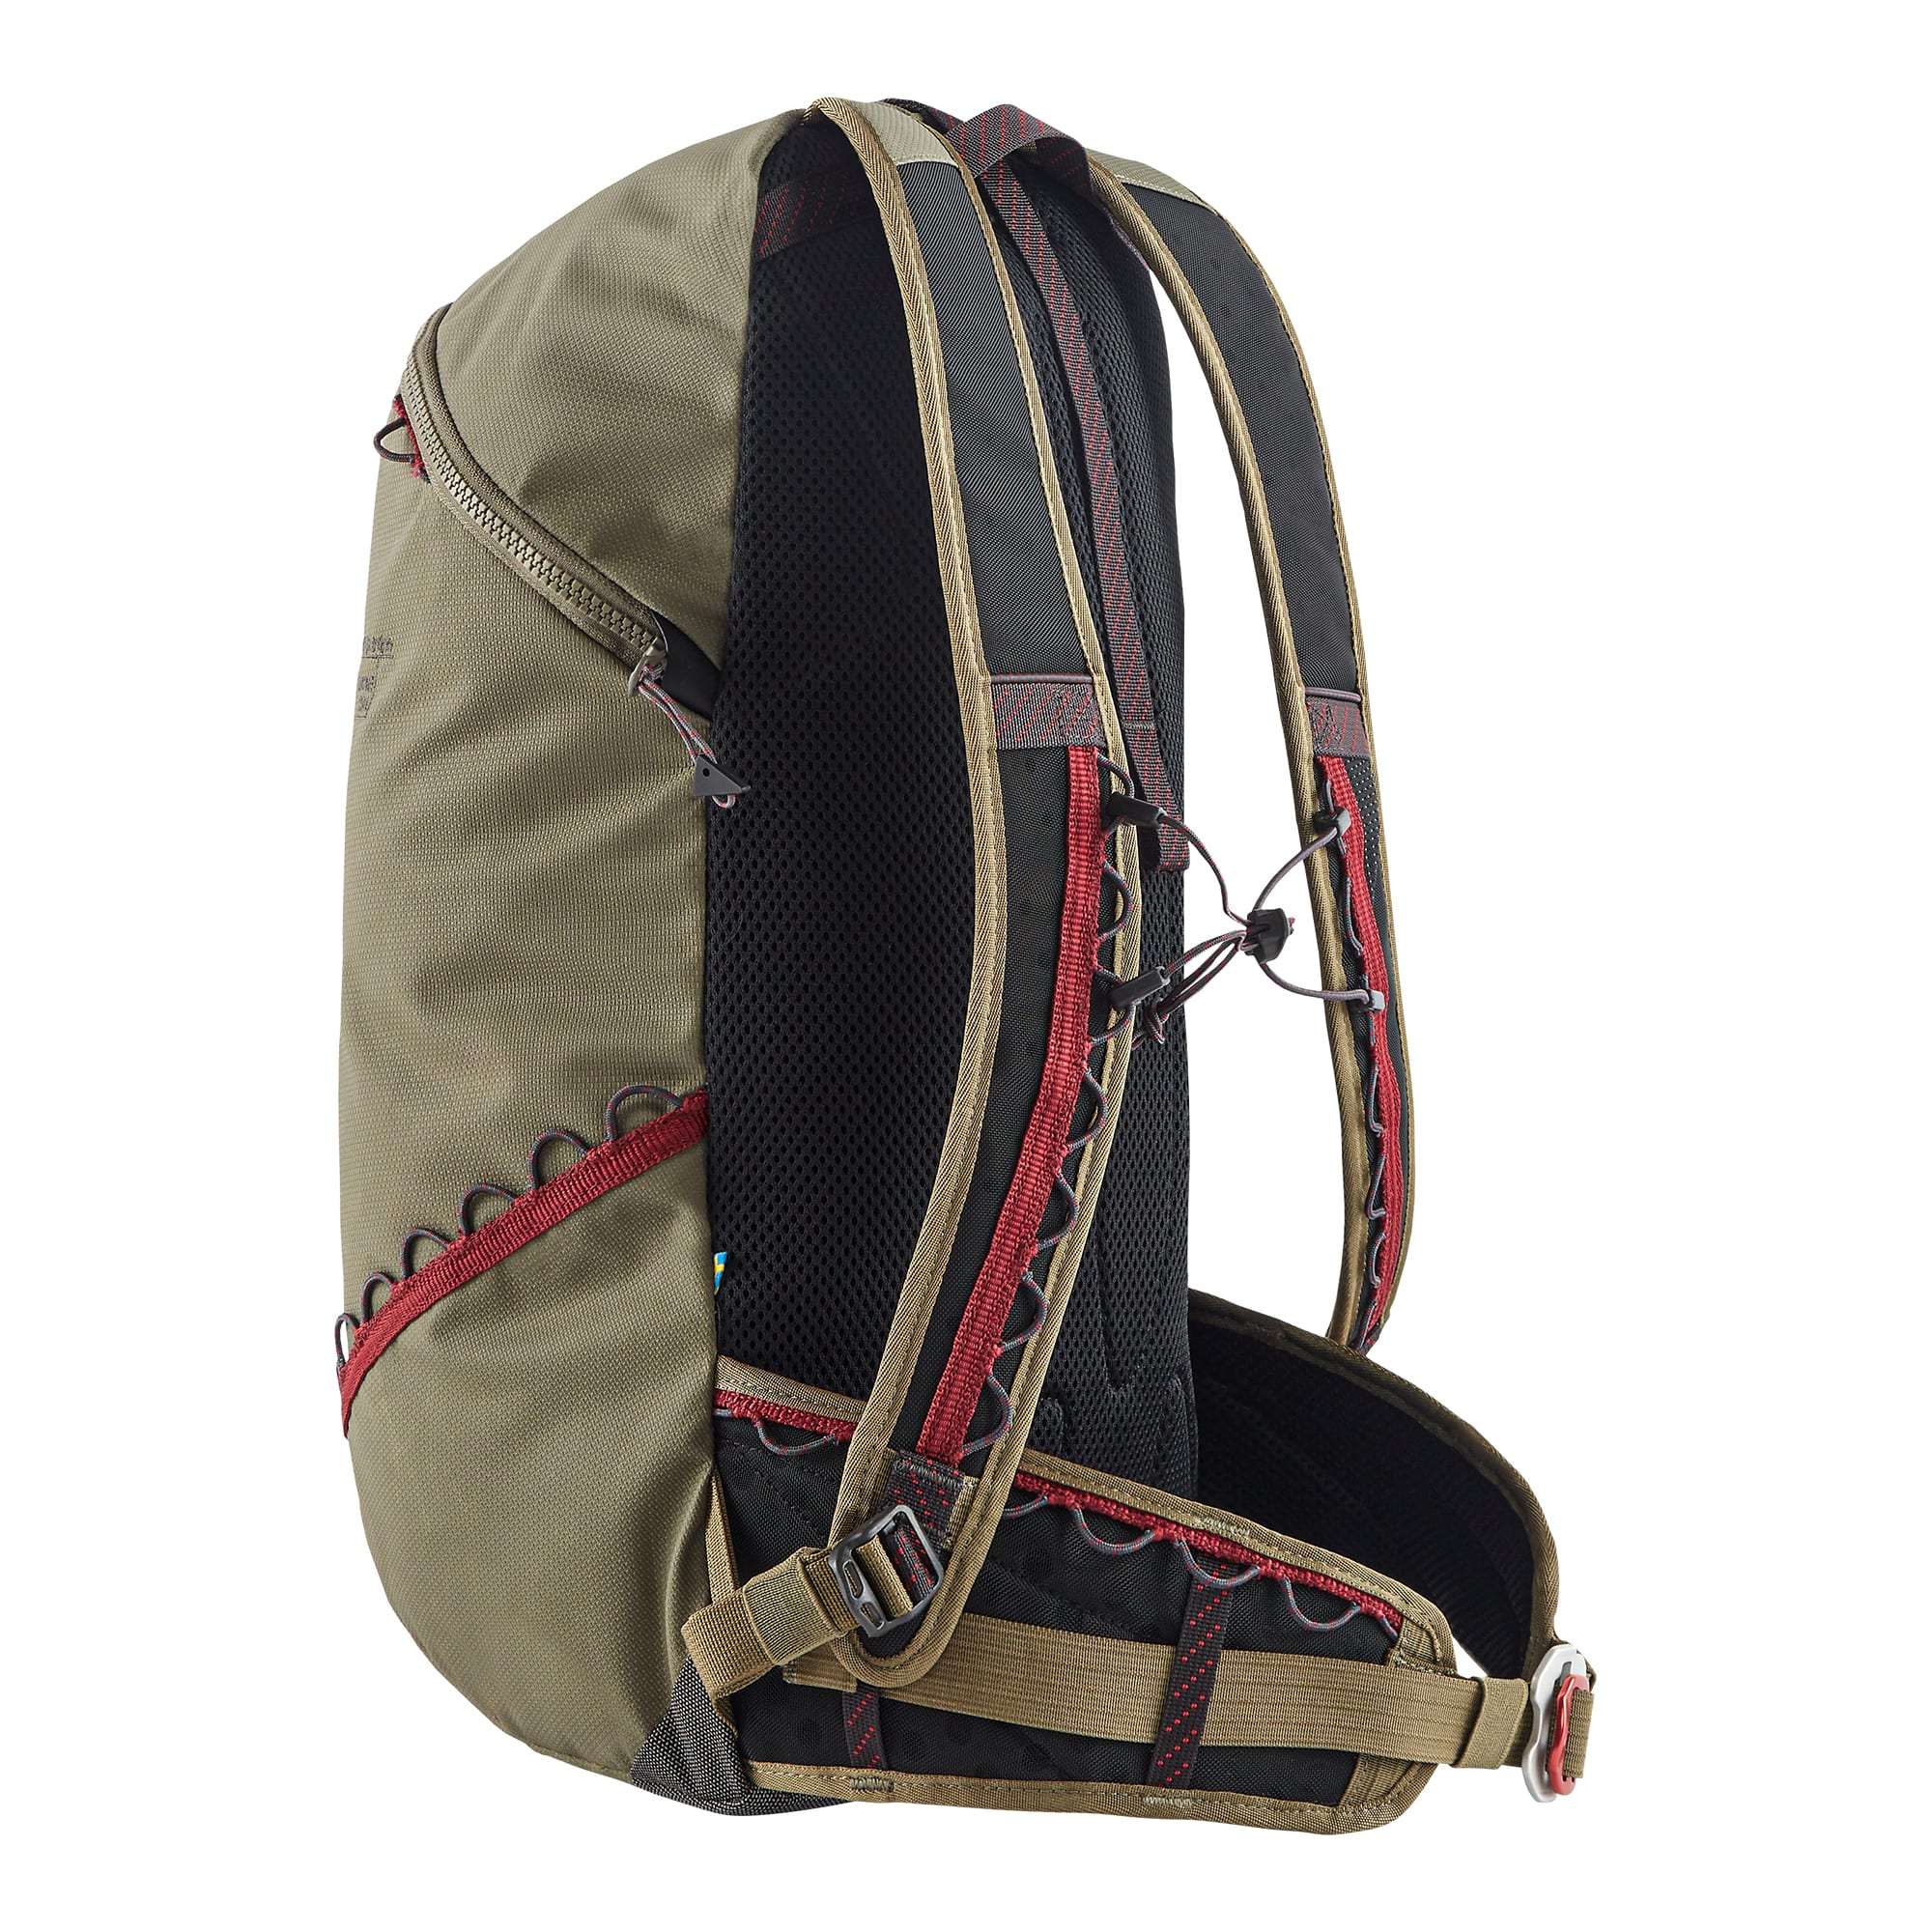 Køb Bure Backpack 20 L fra Outnorth